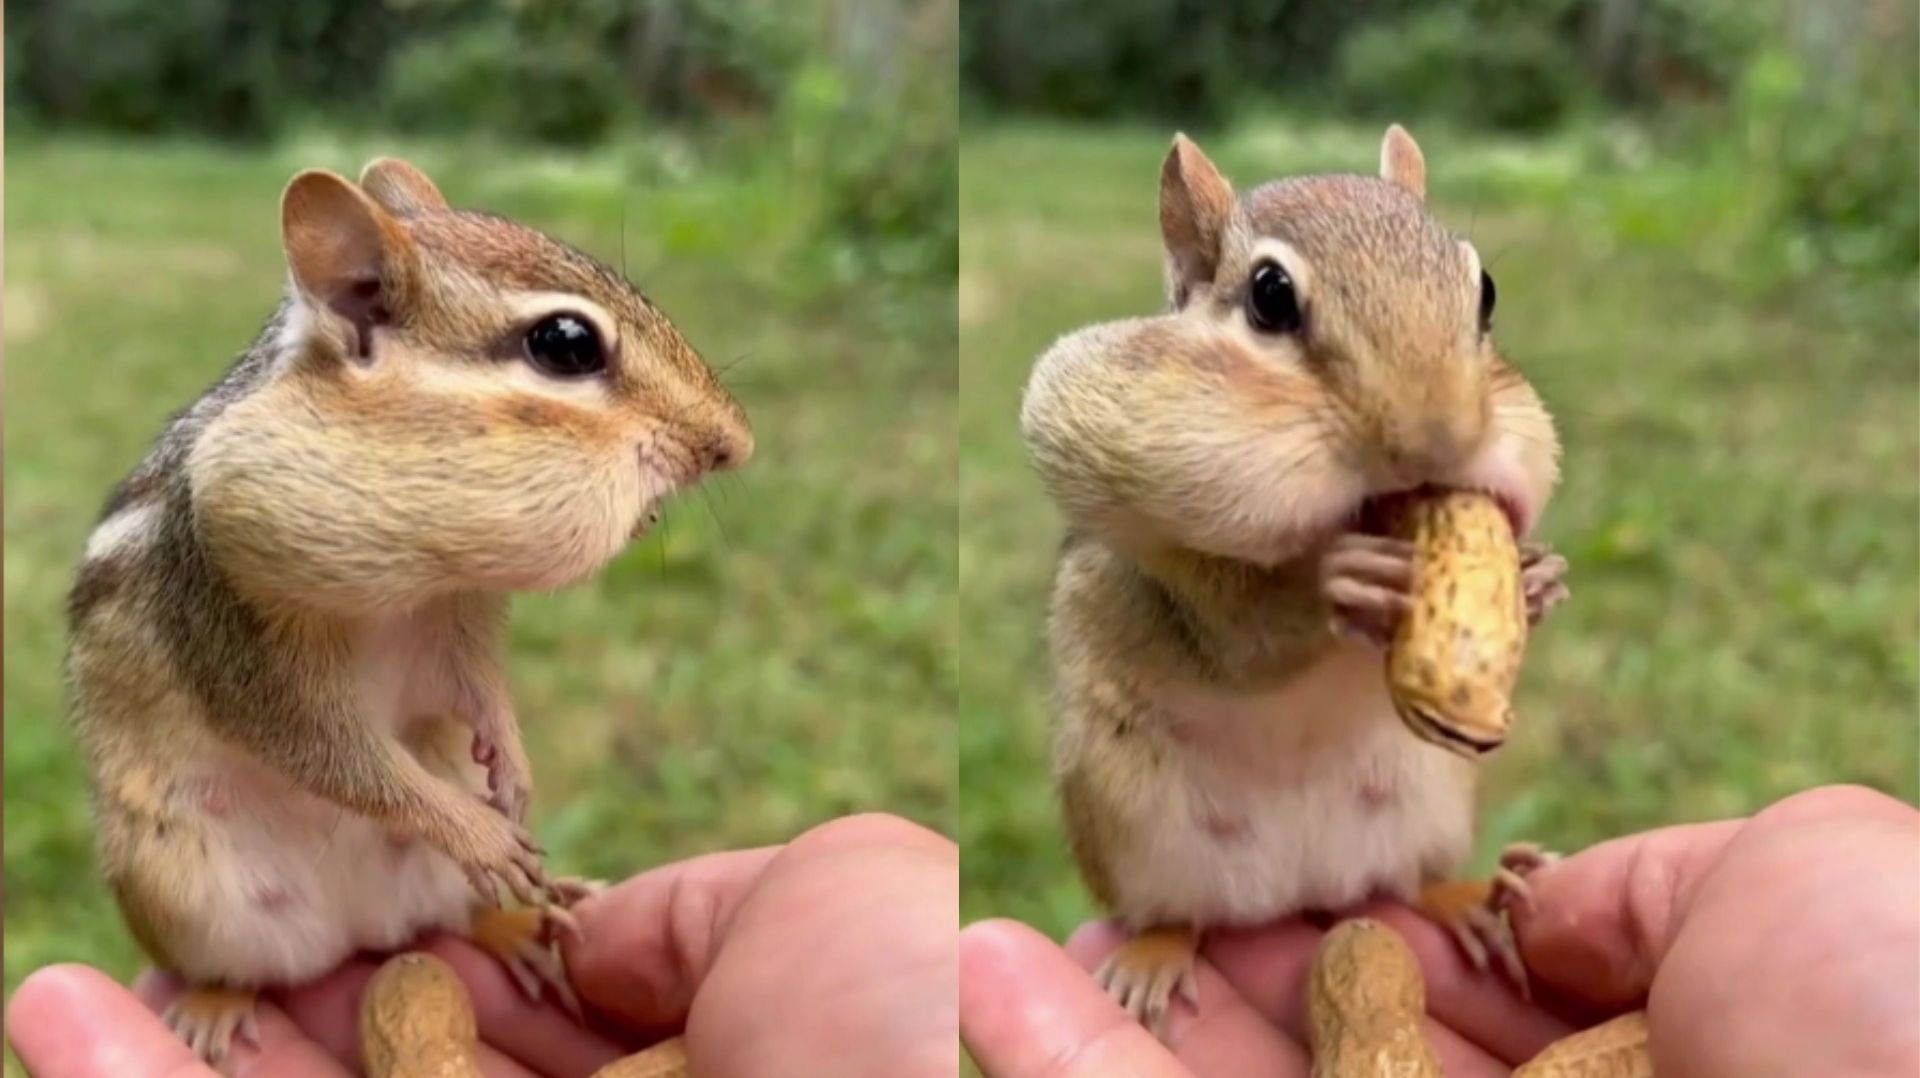 Quelle est la nourriture préférée de l'Écureuil ? - SOS ECUREUIL